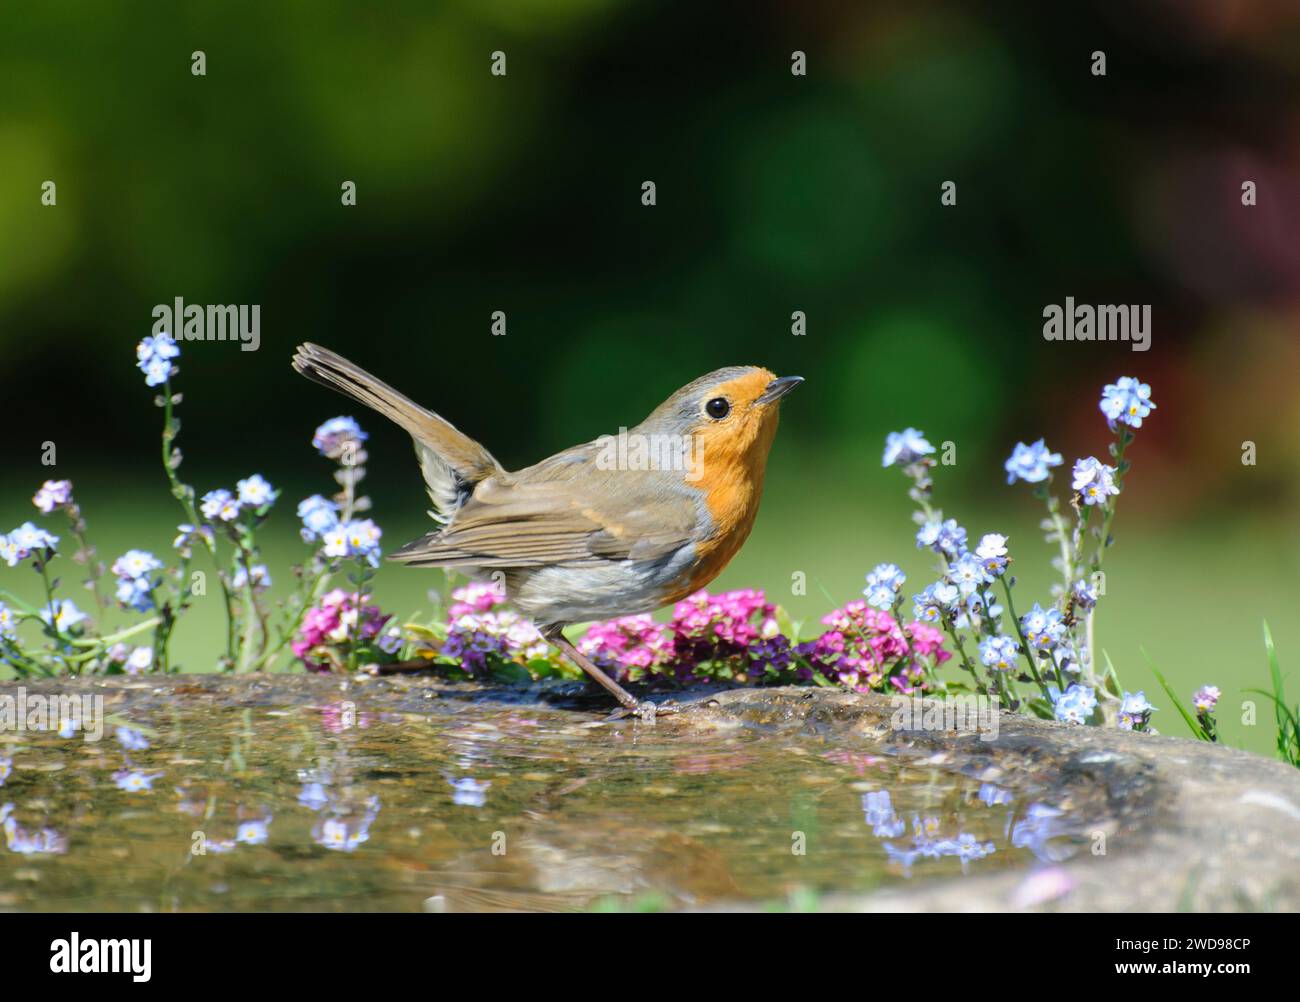 Rouge-gorge européen erithacus rubecula, exposition de menaces, perché sur un bain d'oiseaux dans le jardin, mai. Banque D'Images